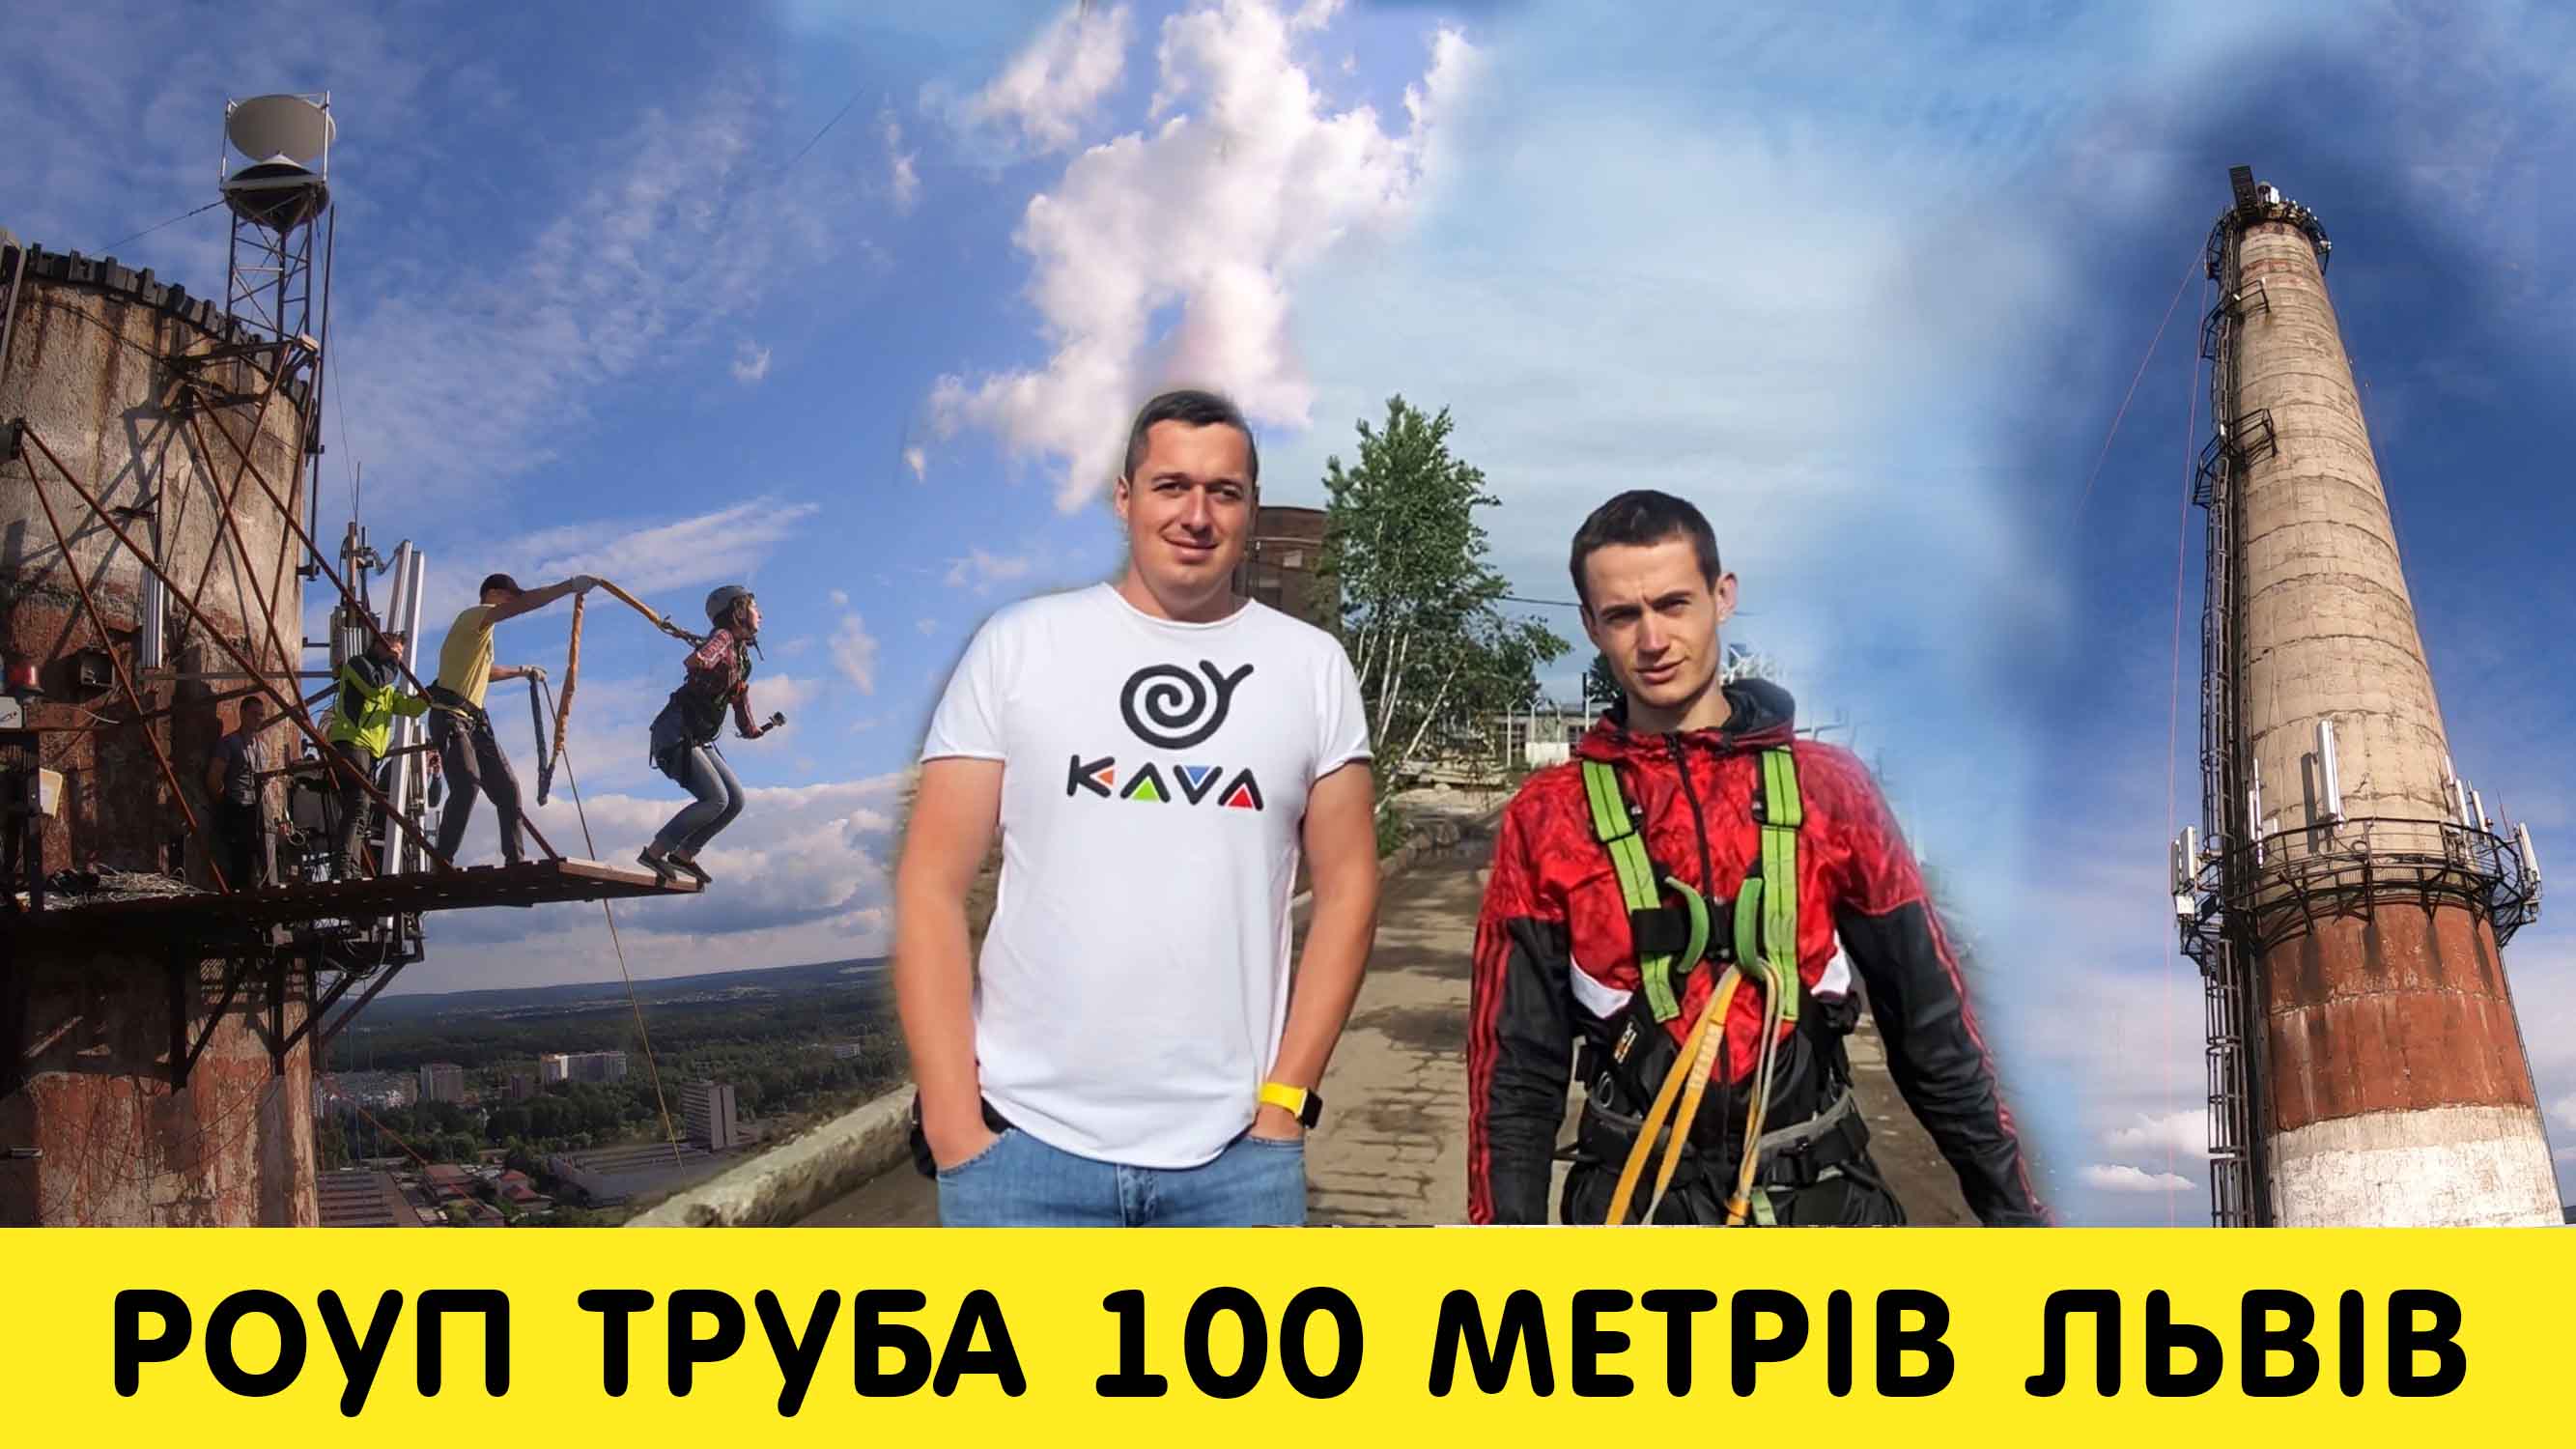 KAVA VLOG | Роуп-джампинг с Трубы 100 метров счастью, новая вершина в Львове